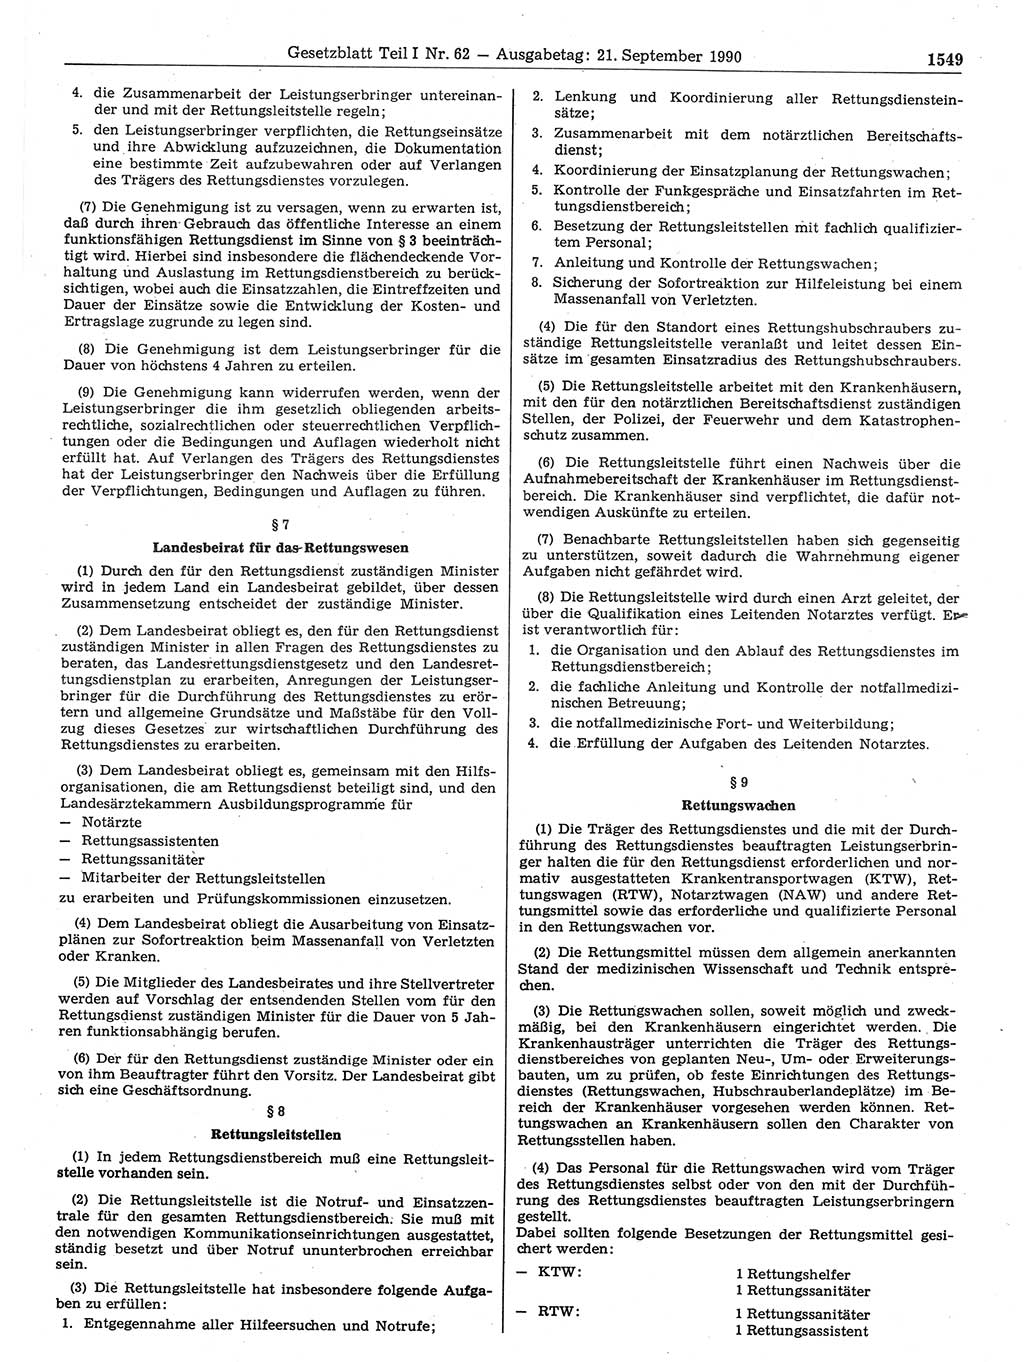 Gesetzblatt (GBl.) der Deutschen Demokratischen Republik (DDR) Teil Ⅰ 1990, Seite 1549 (GBl. DDR Ⅰ 1990, S. 1549)